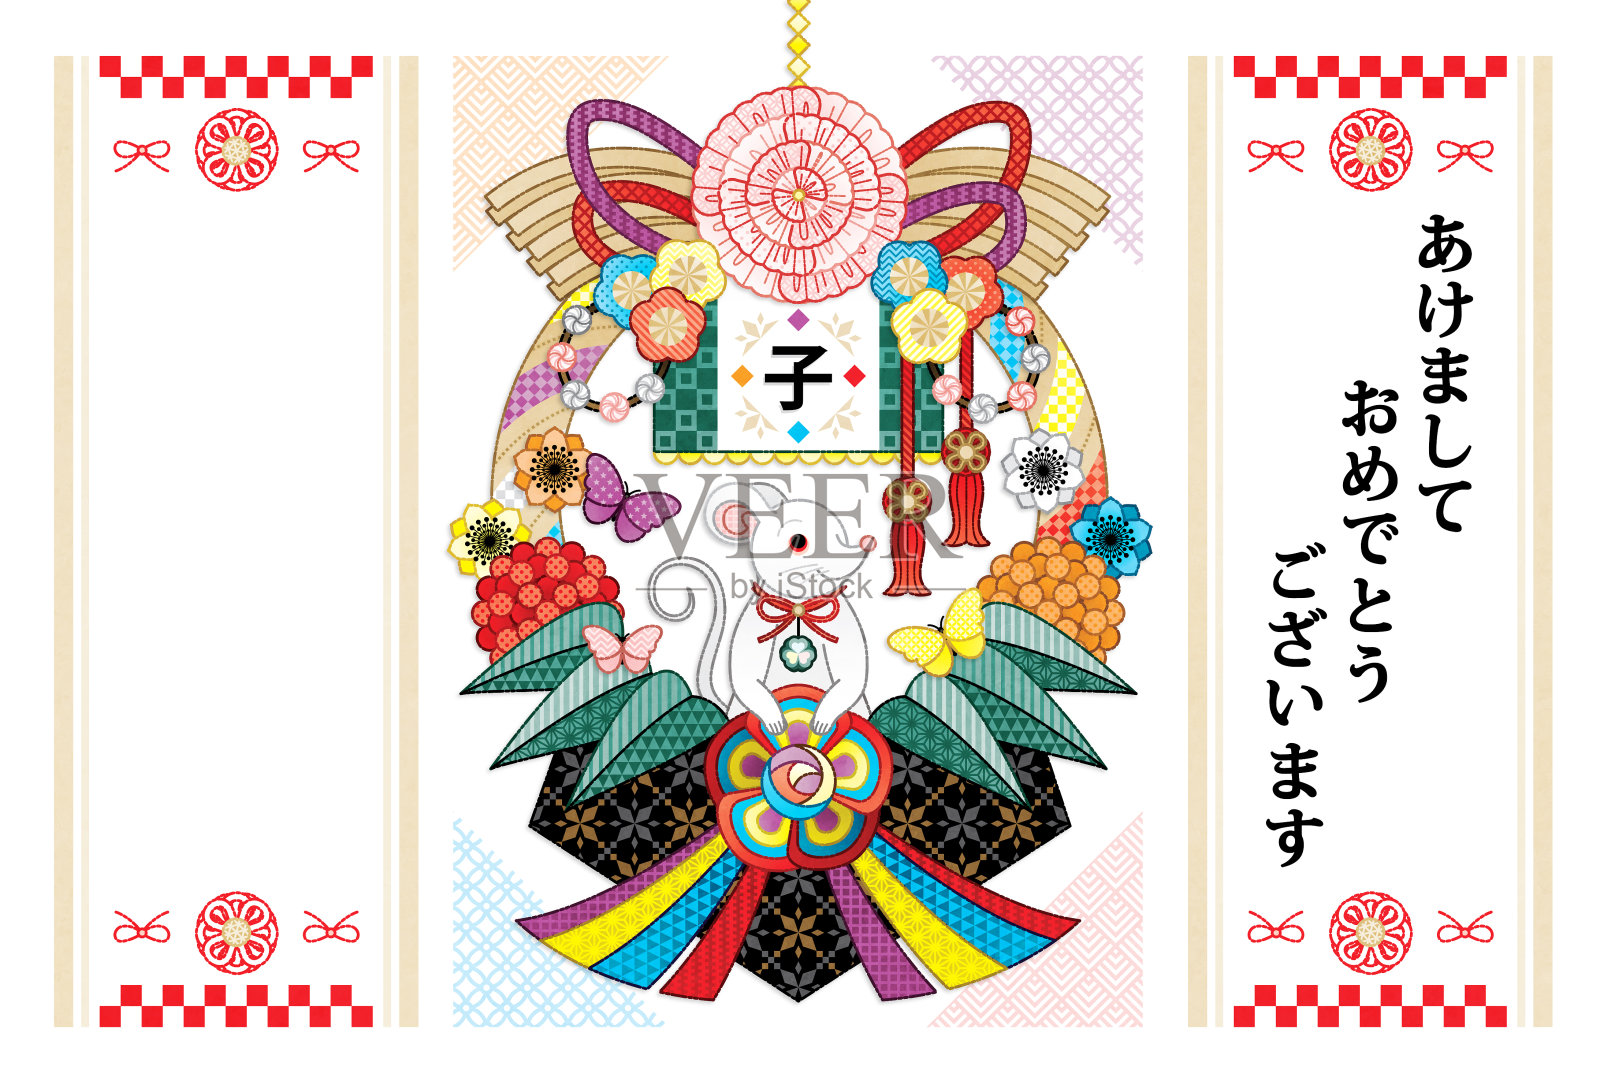 2020年的鼠年贺年卡和日本的装饰插图贺卡设计设计模板素材